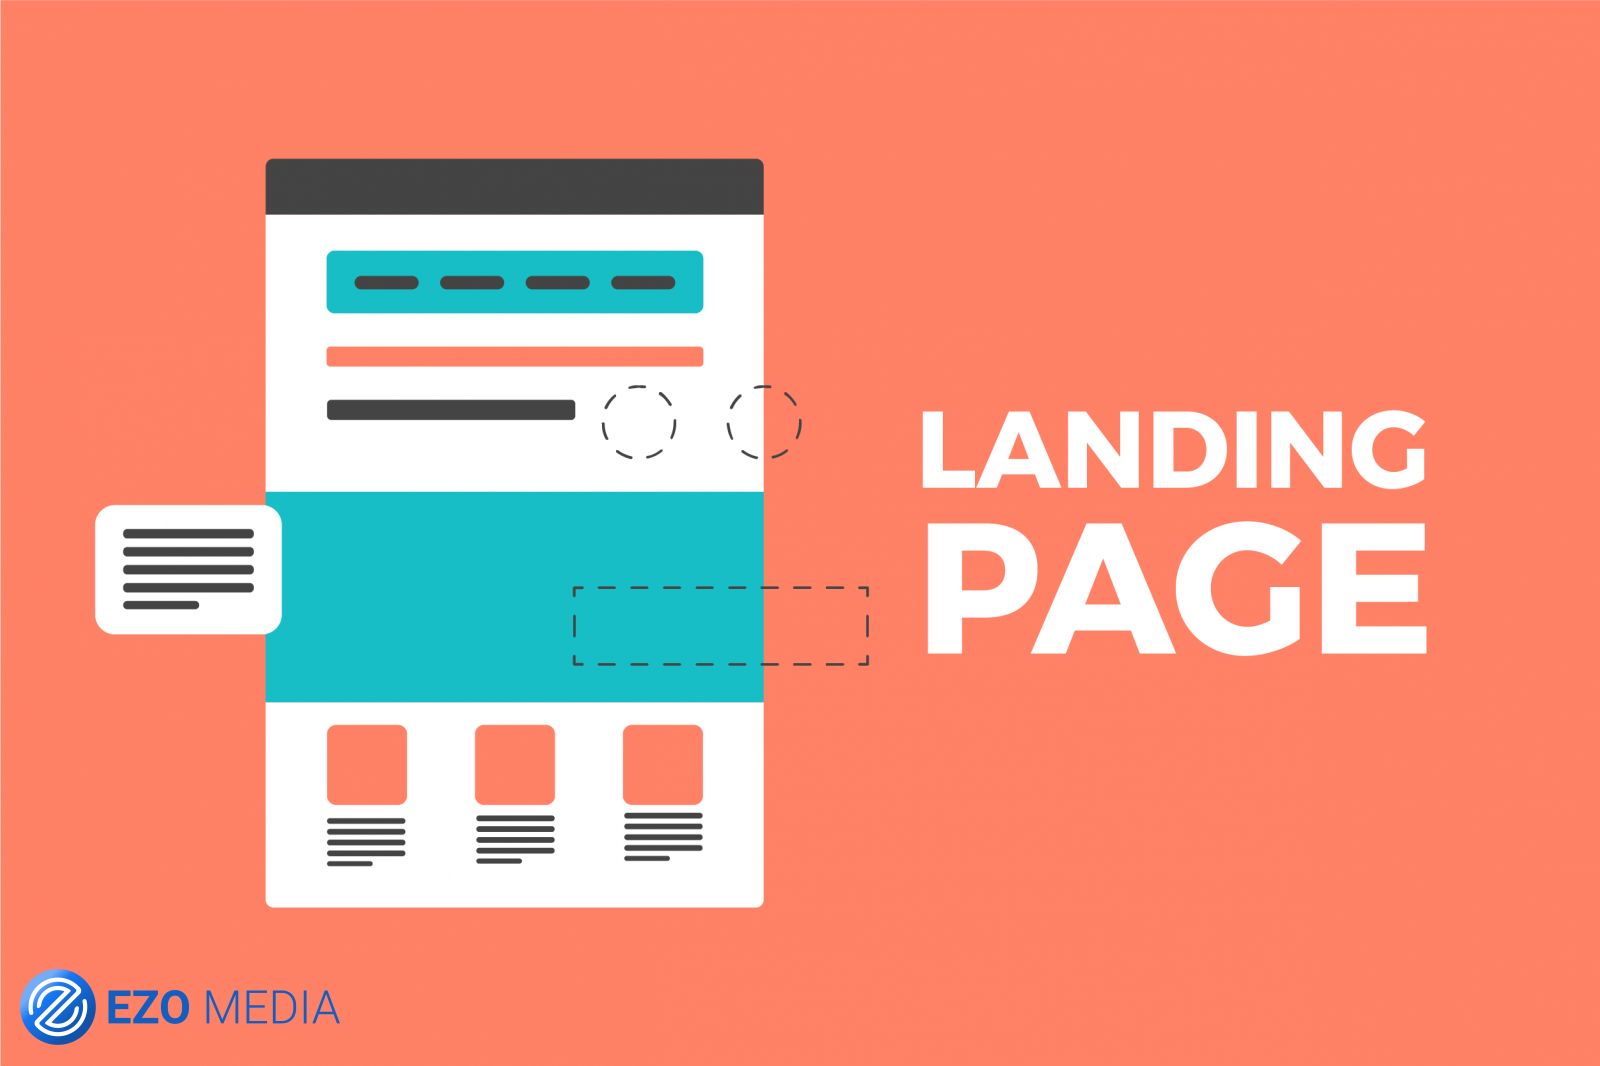 Landing Page là gì? Sự khác biệt giữa “Trang chủ” và “Landing Page” là gì?